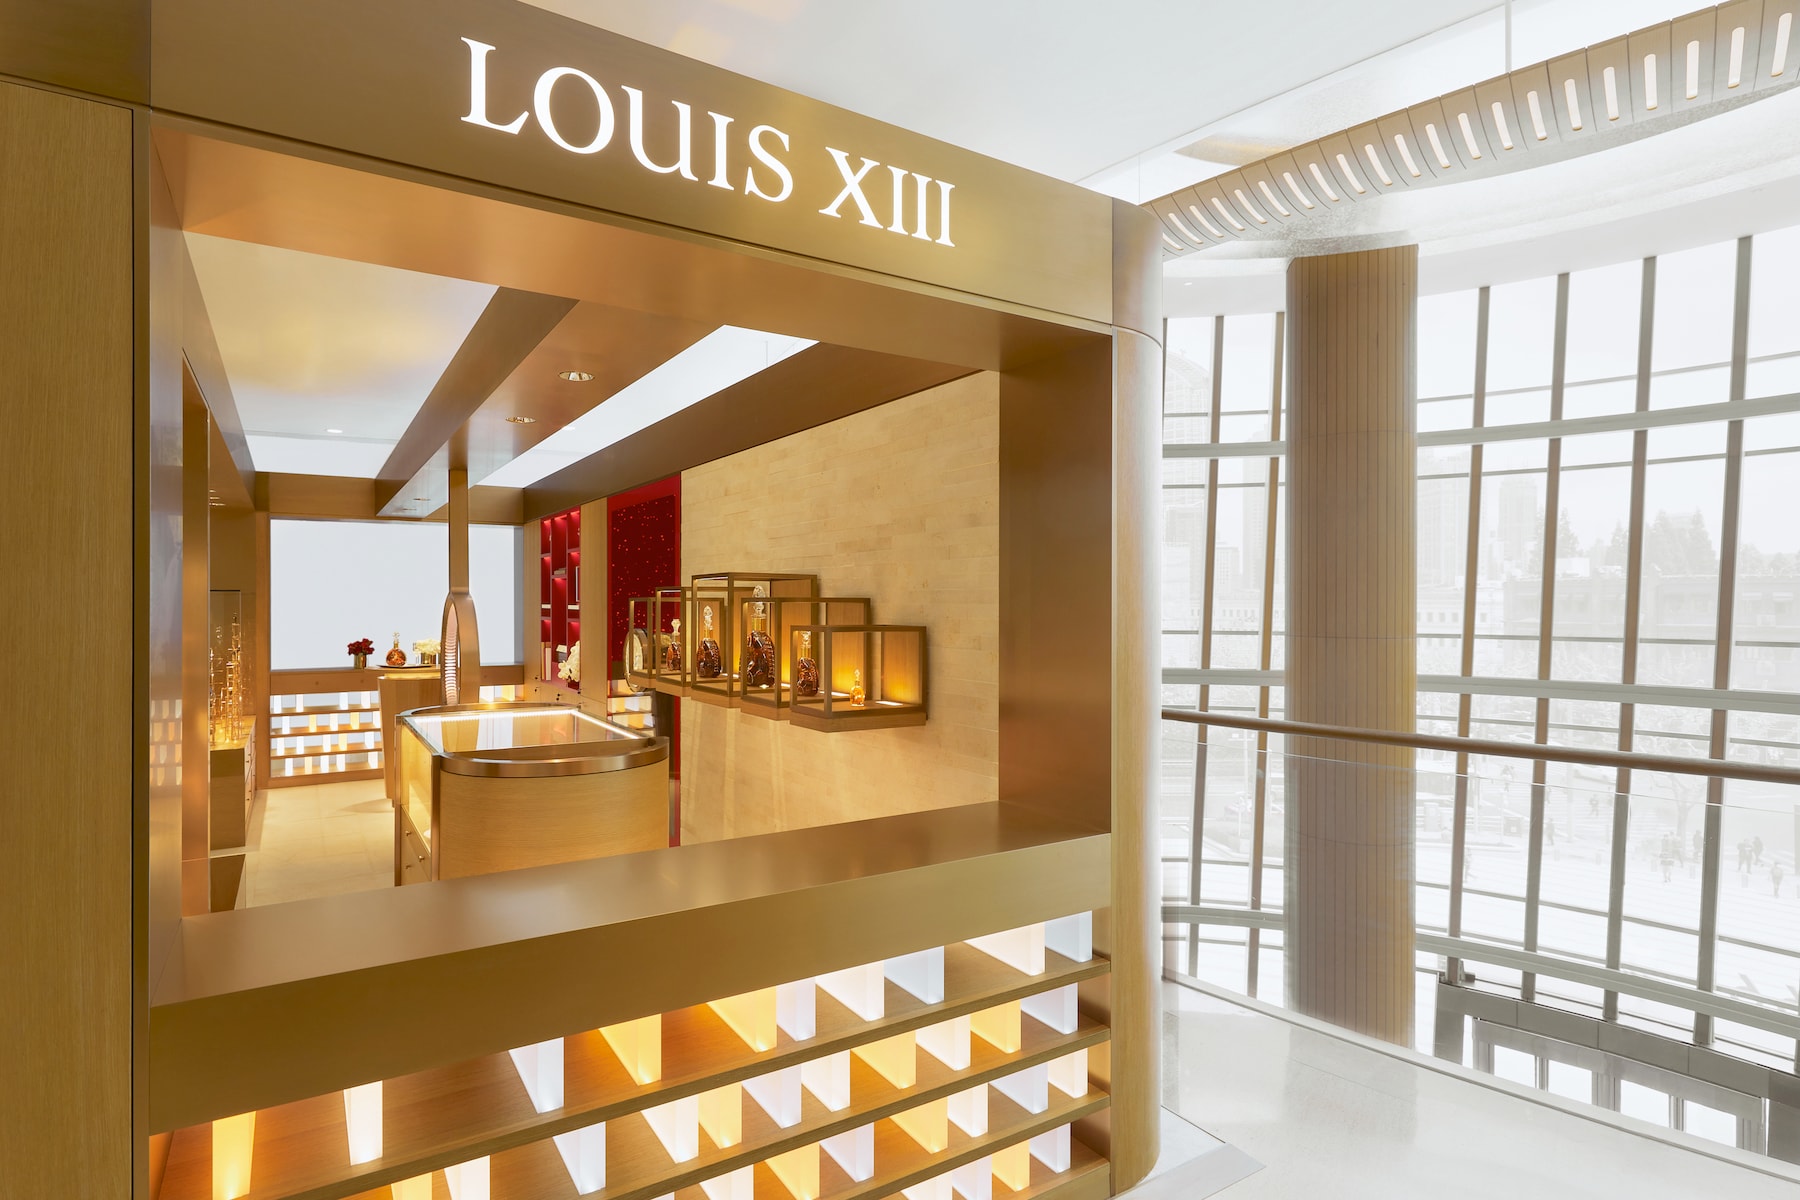 走进 LOUIS XIII 上海首家品牌店